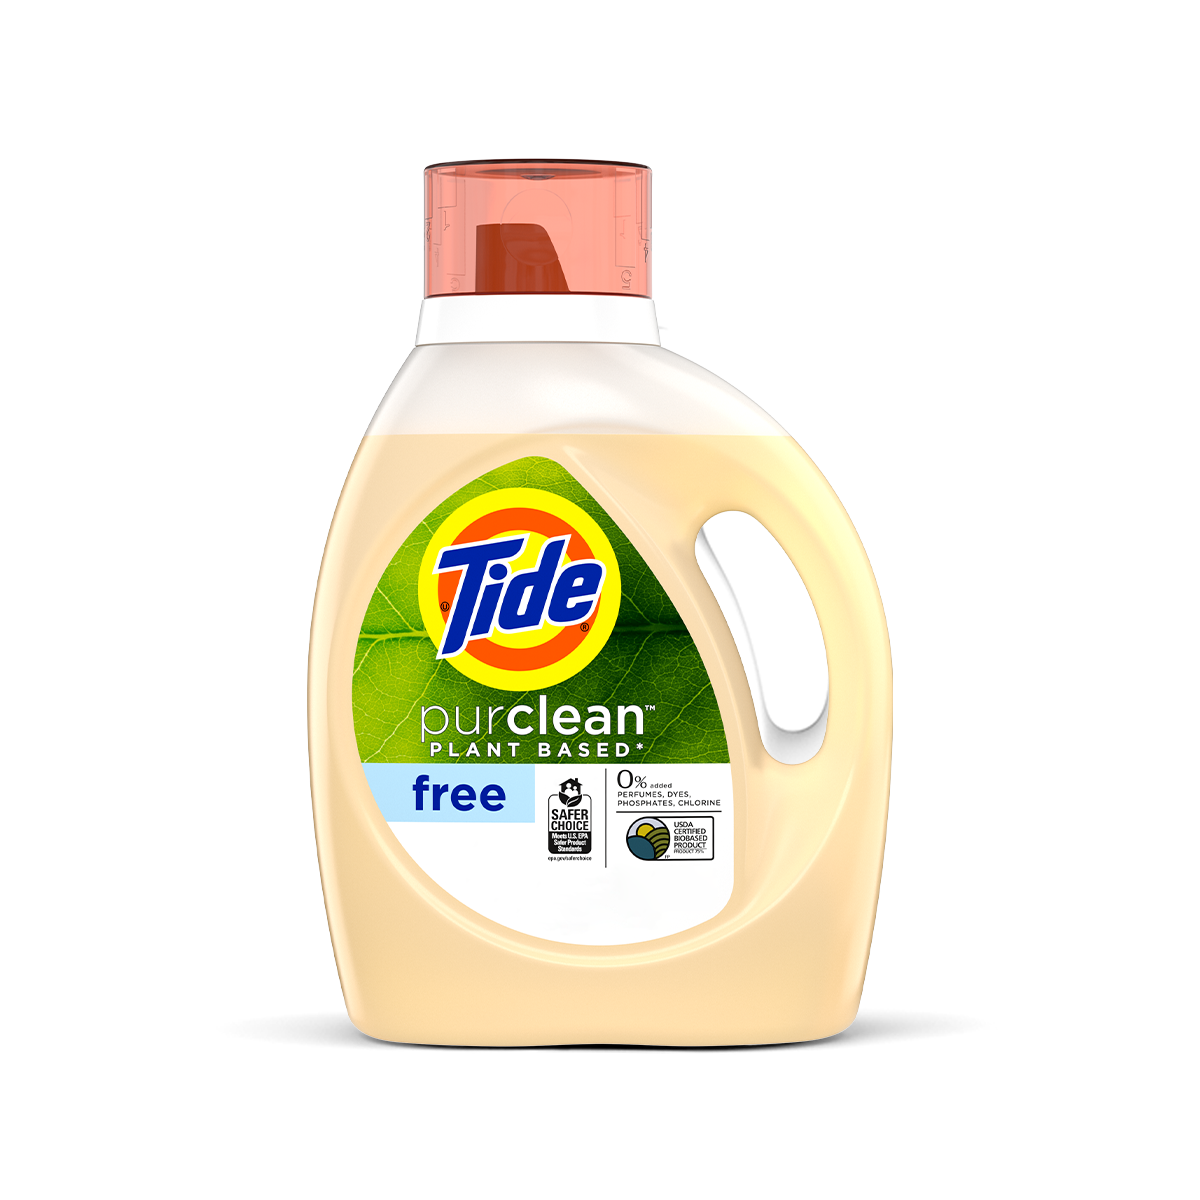 Tide purclean™ Unscented Liquid Laundry Detergent - 34 ounces, color cream